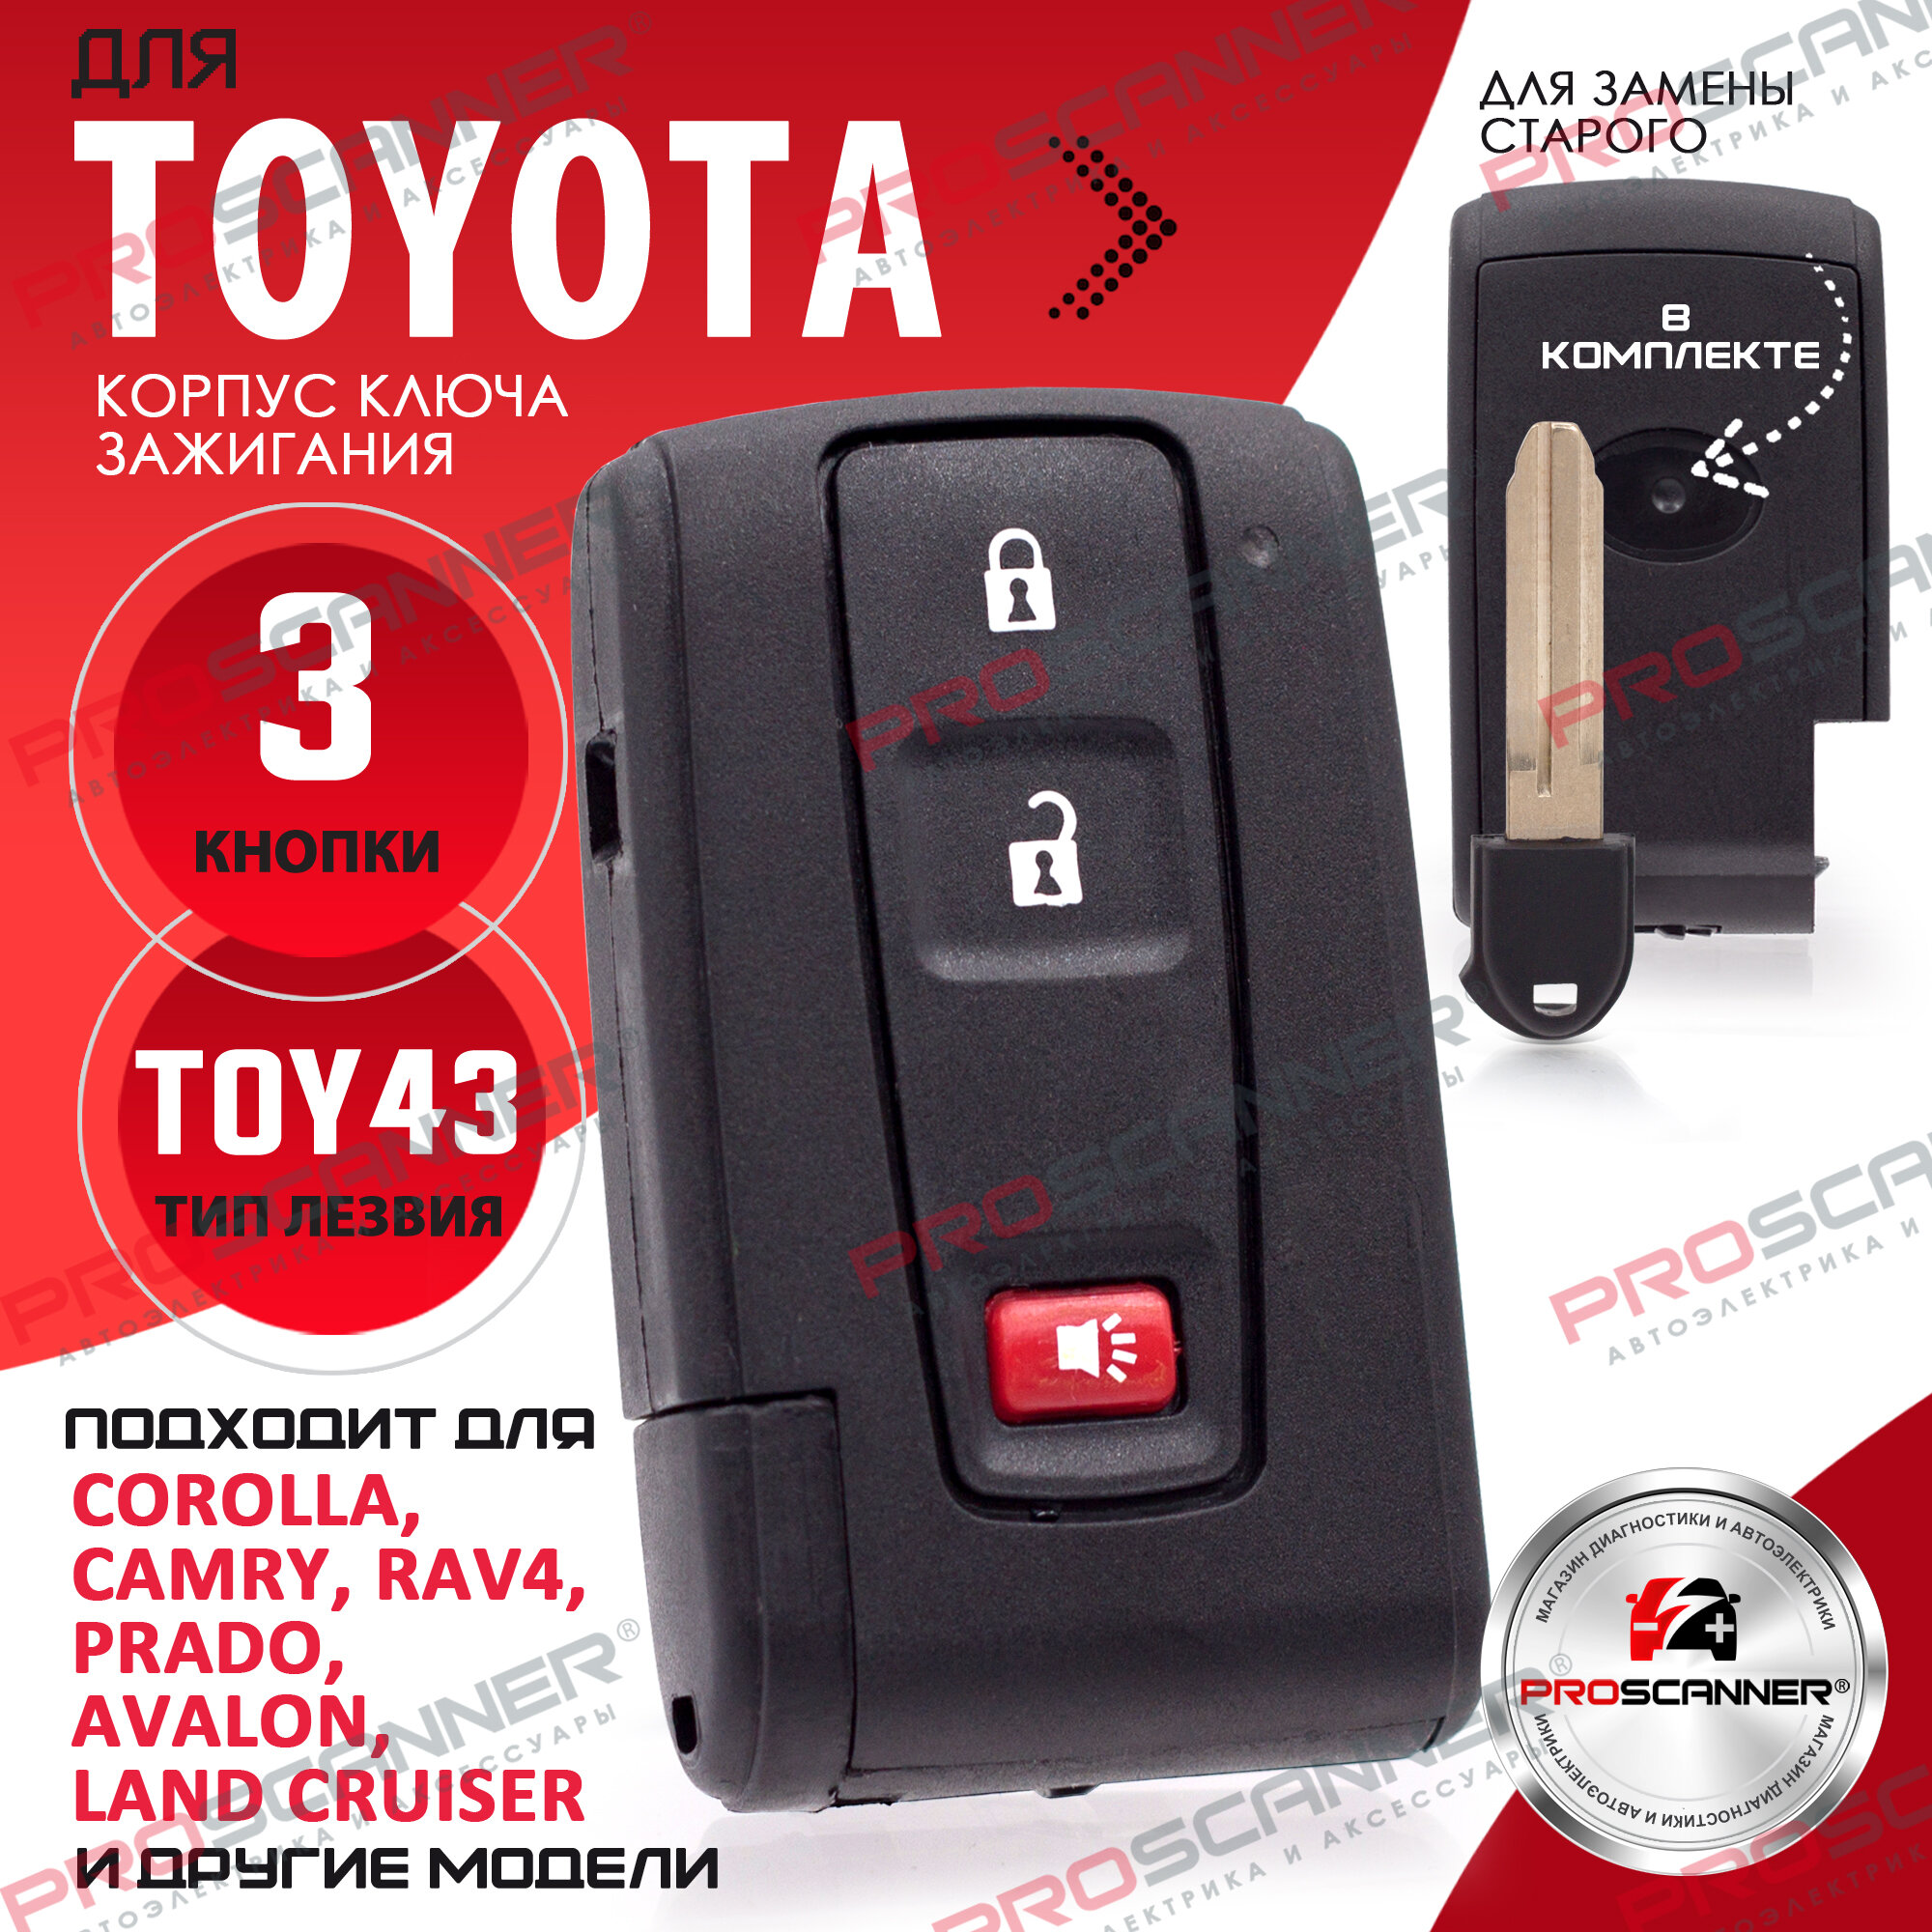 Корпус смарт ключа зажигания для Toyota / Тойота c лезвием TOY43 - 3 кнопки / Брелок автомобильный